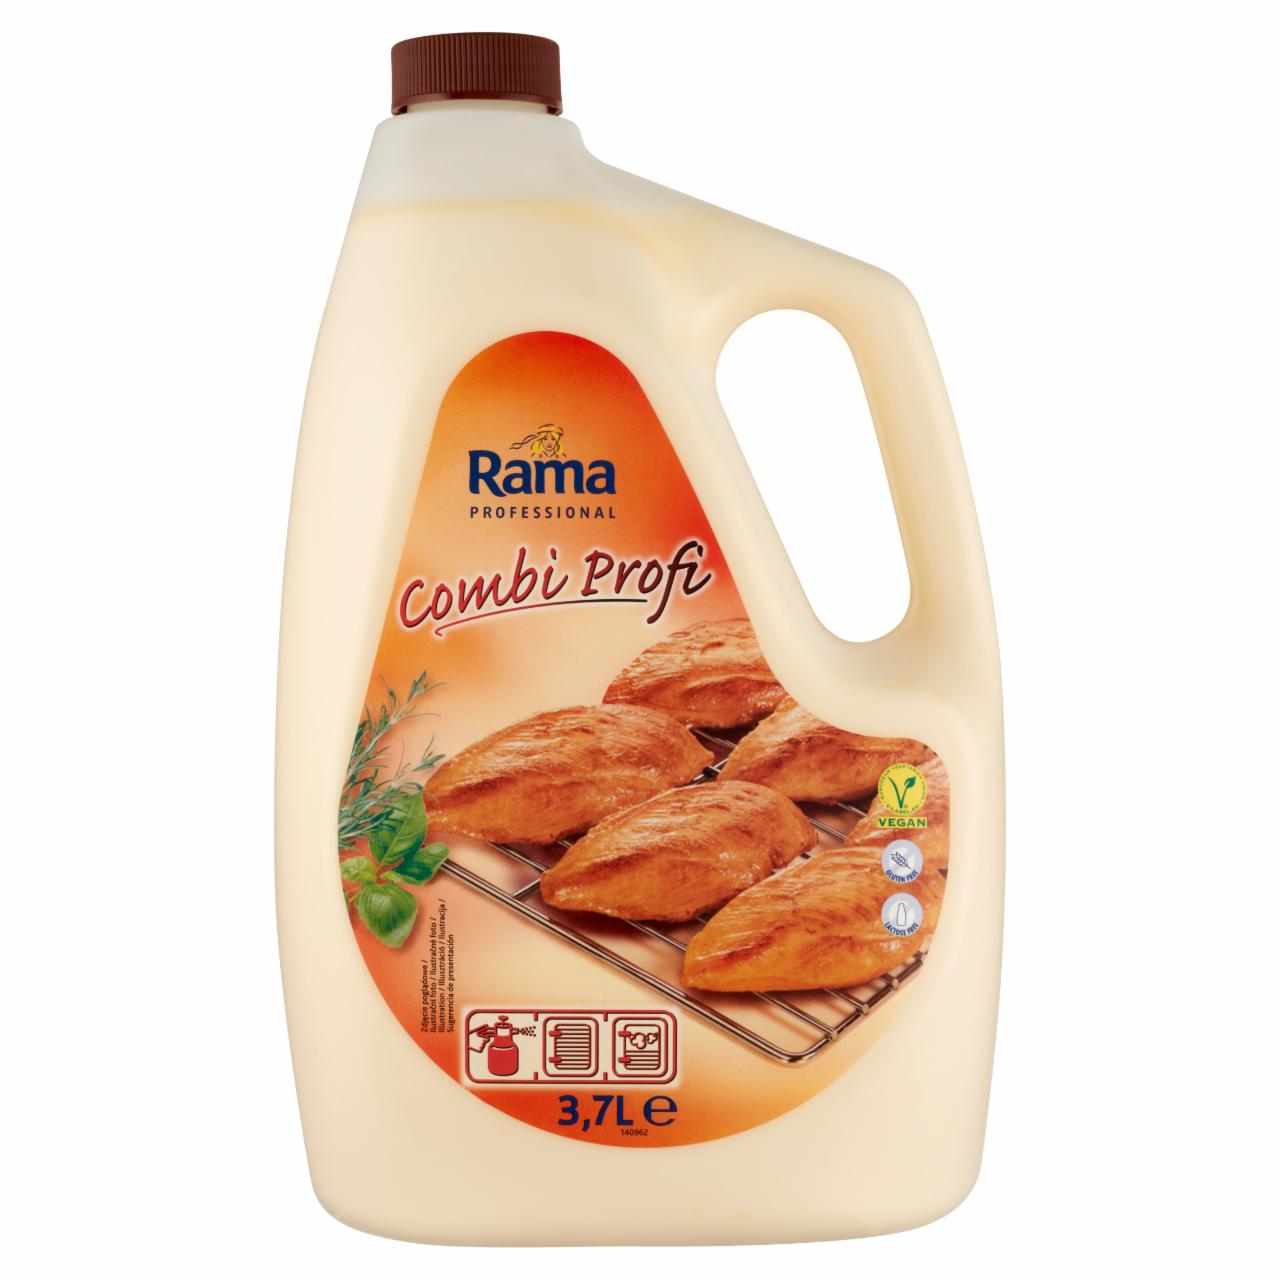 Képek - Rama Professional 40% zsírtartalmú folyékony light sütőmargarin 3,7 l